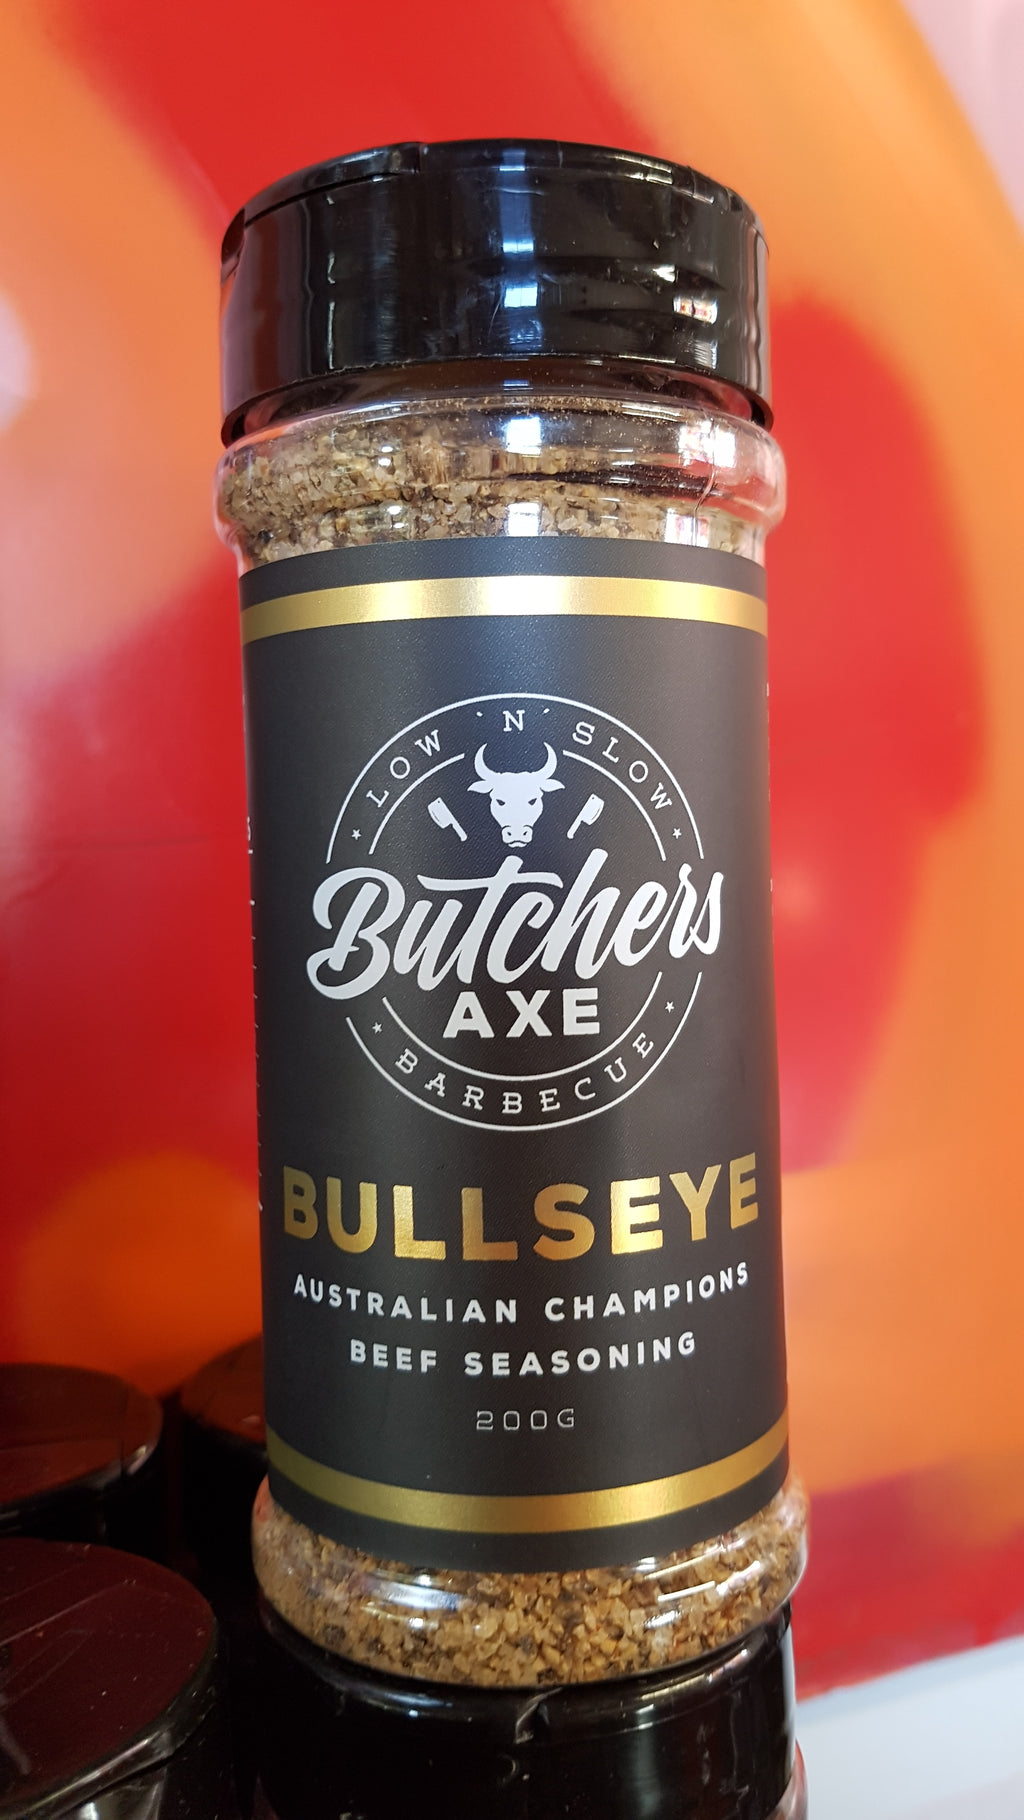 BULLSEYE Beef Seasoning 200g by Butcher's Axe